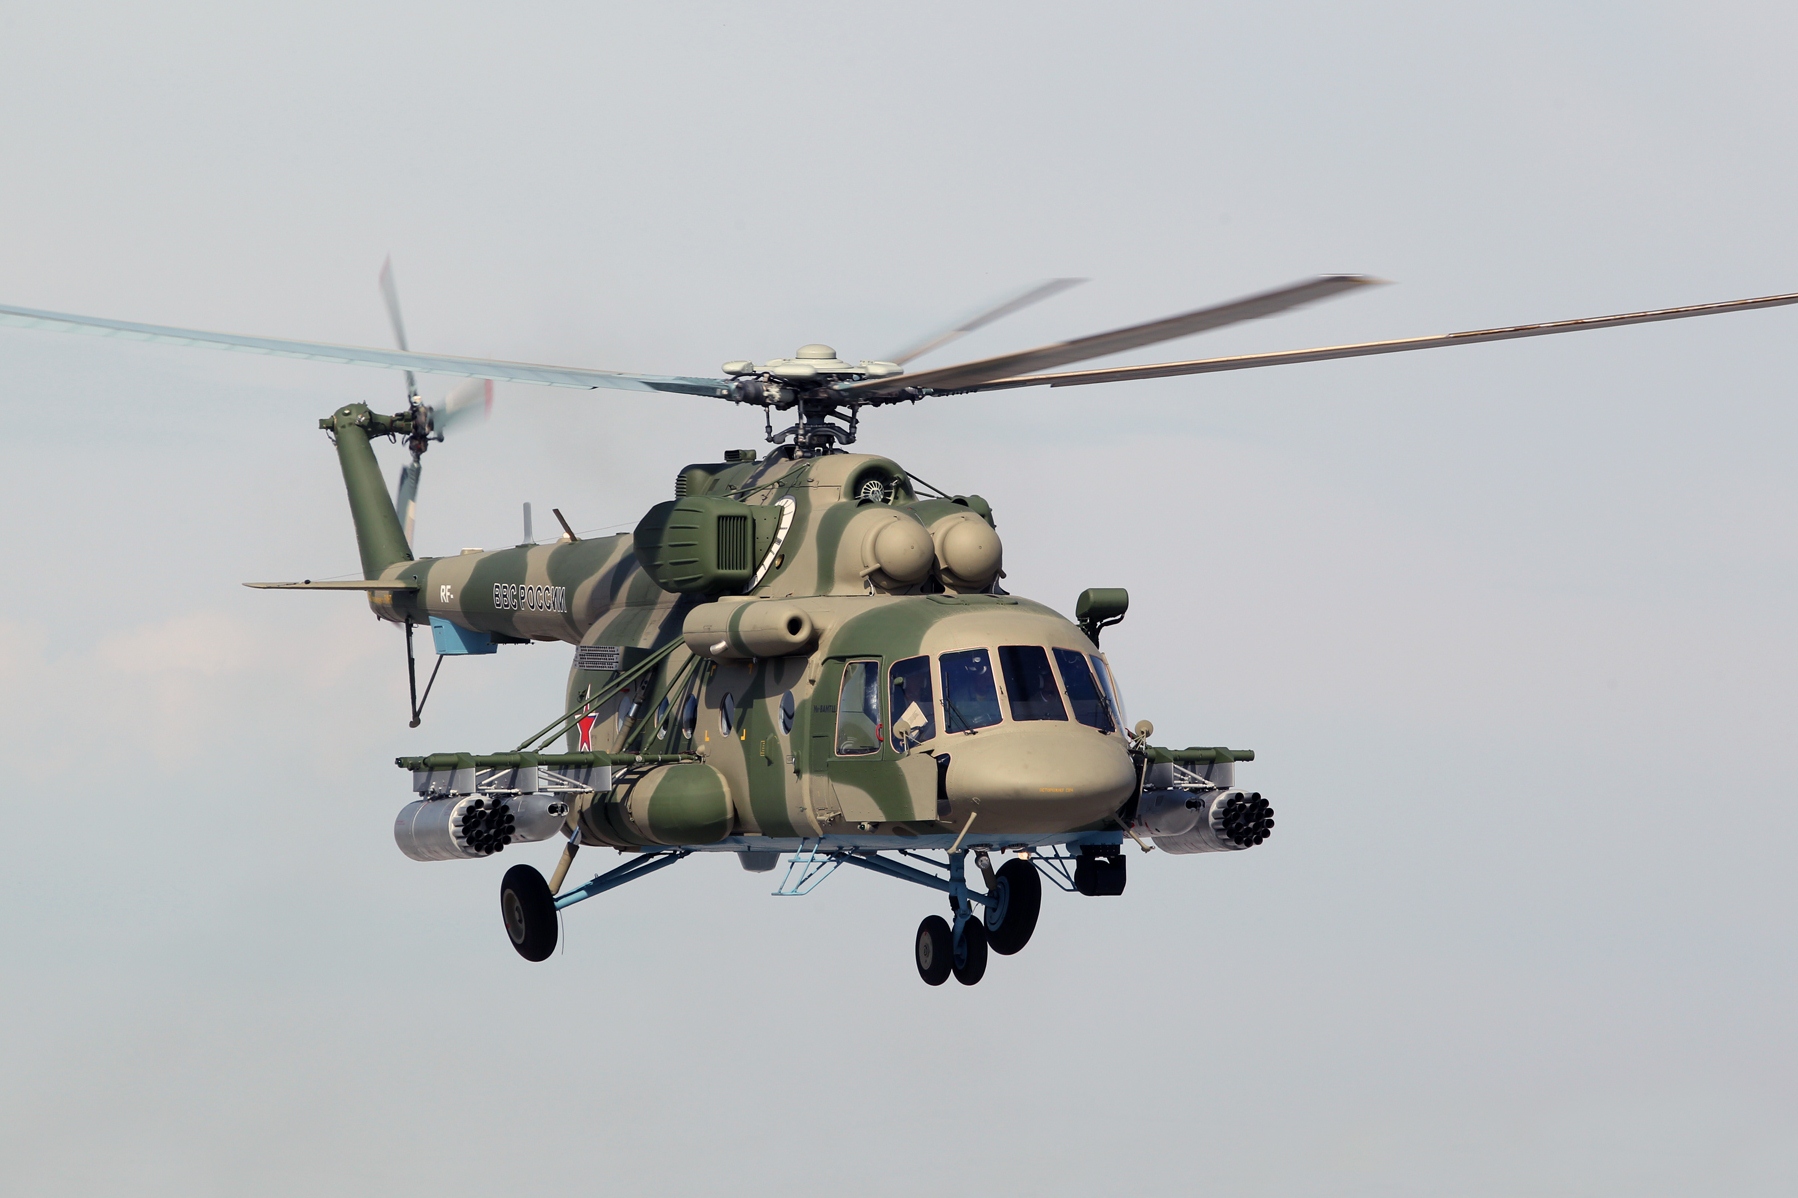 СМИ сообщили о потере связи с двумя российскими вертолетами Ми-8 у границы с Турцией